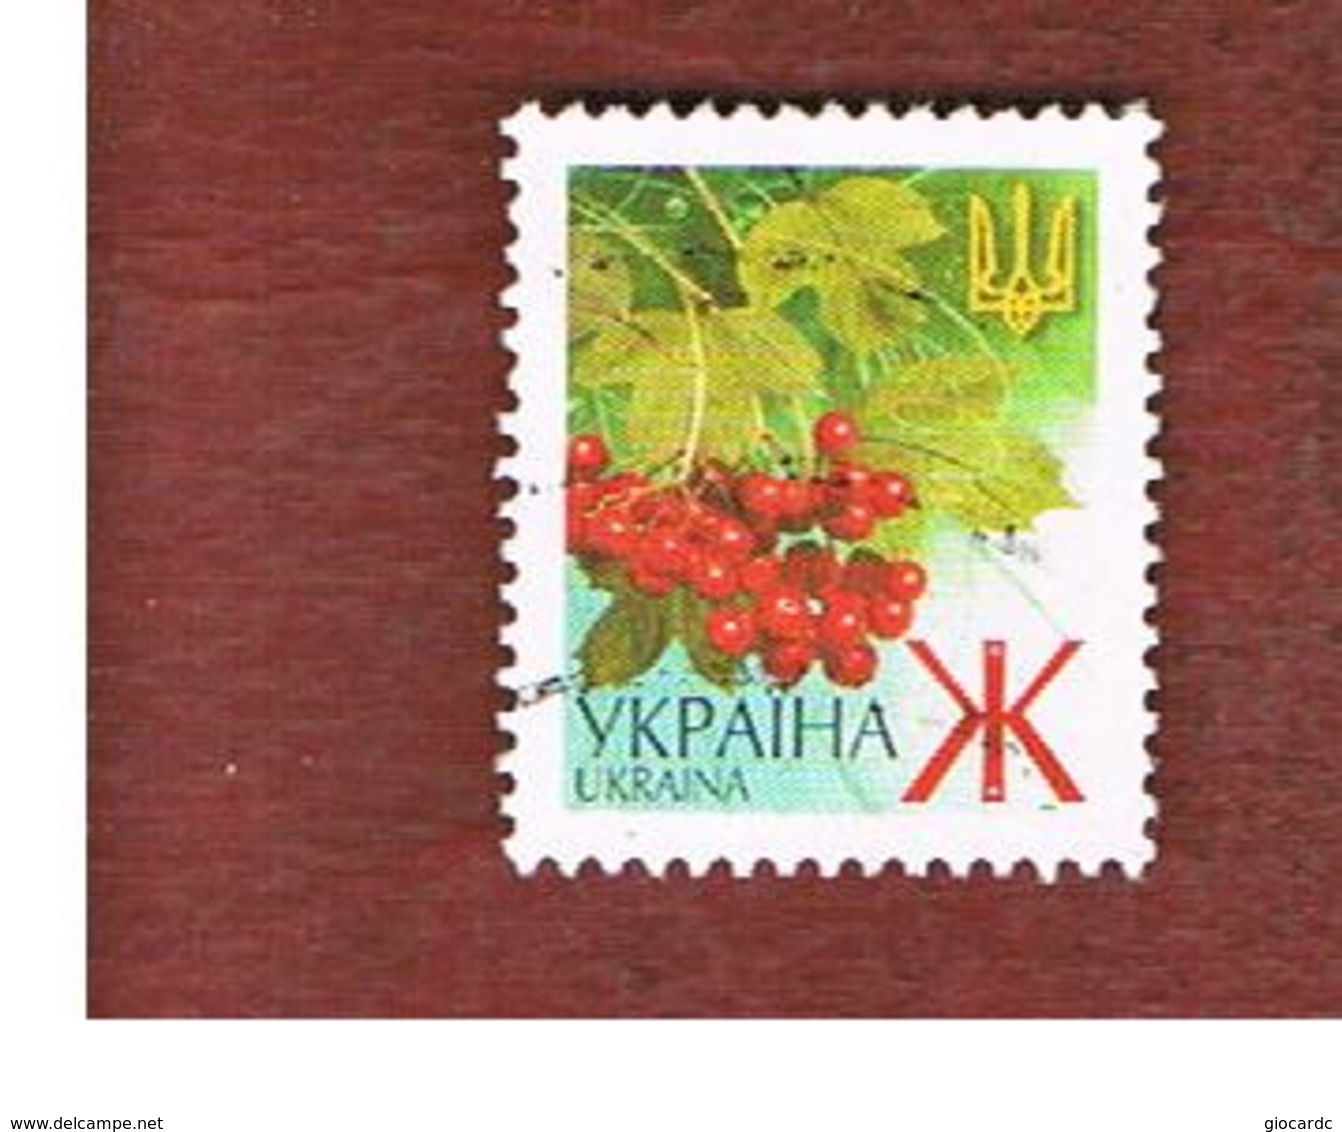 UCRAINA (UKRAINE)  -  MI 436AII   -  2003  PLANTS: GUELDER-ROSE   -   USED - Ucraina